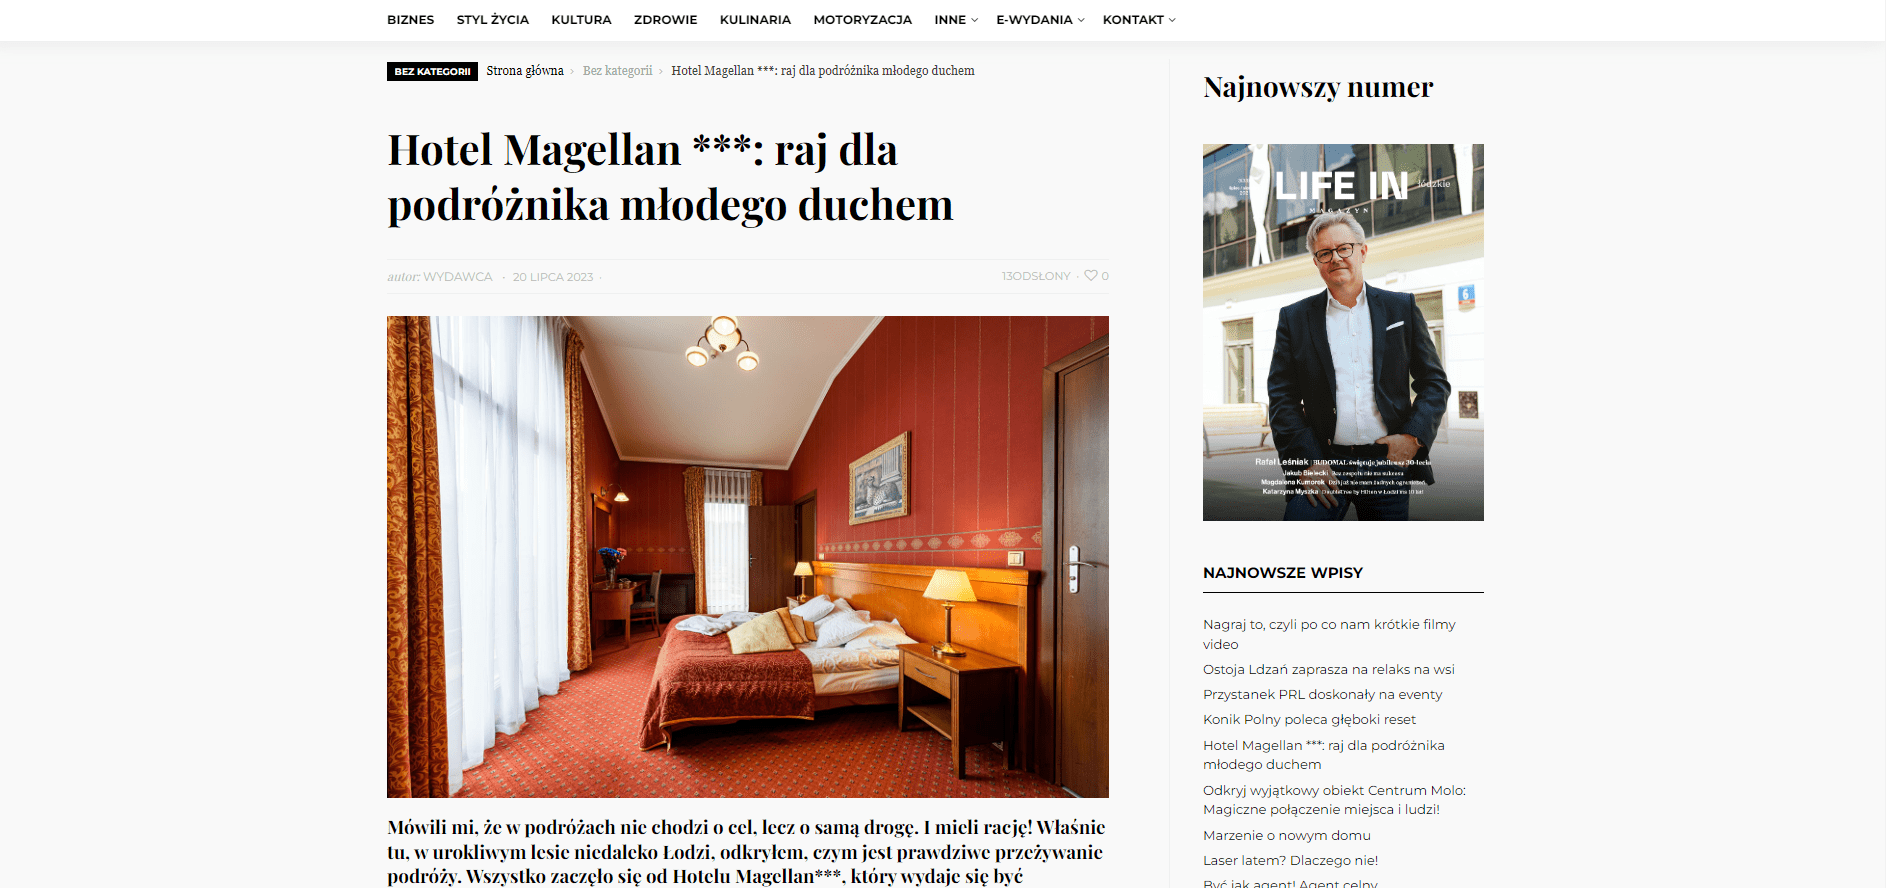 Das Leben in Lodz entdeckt das Hotel Magellan in Bronislawów